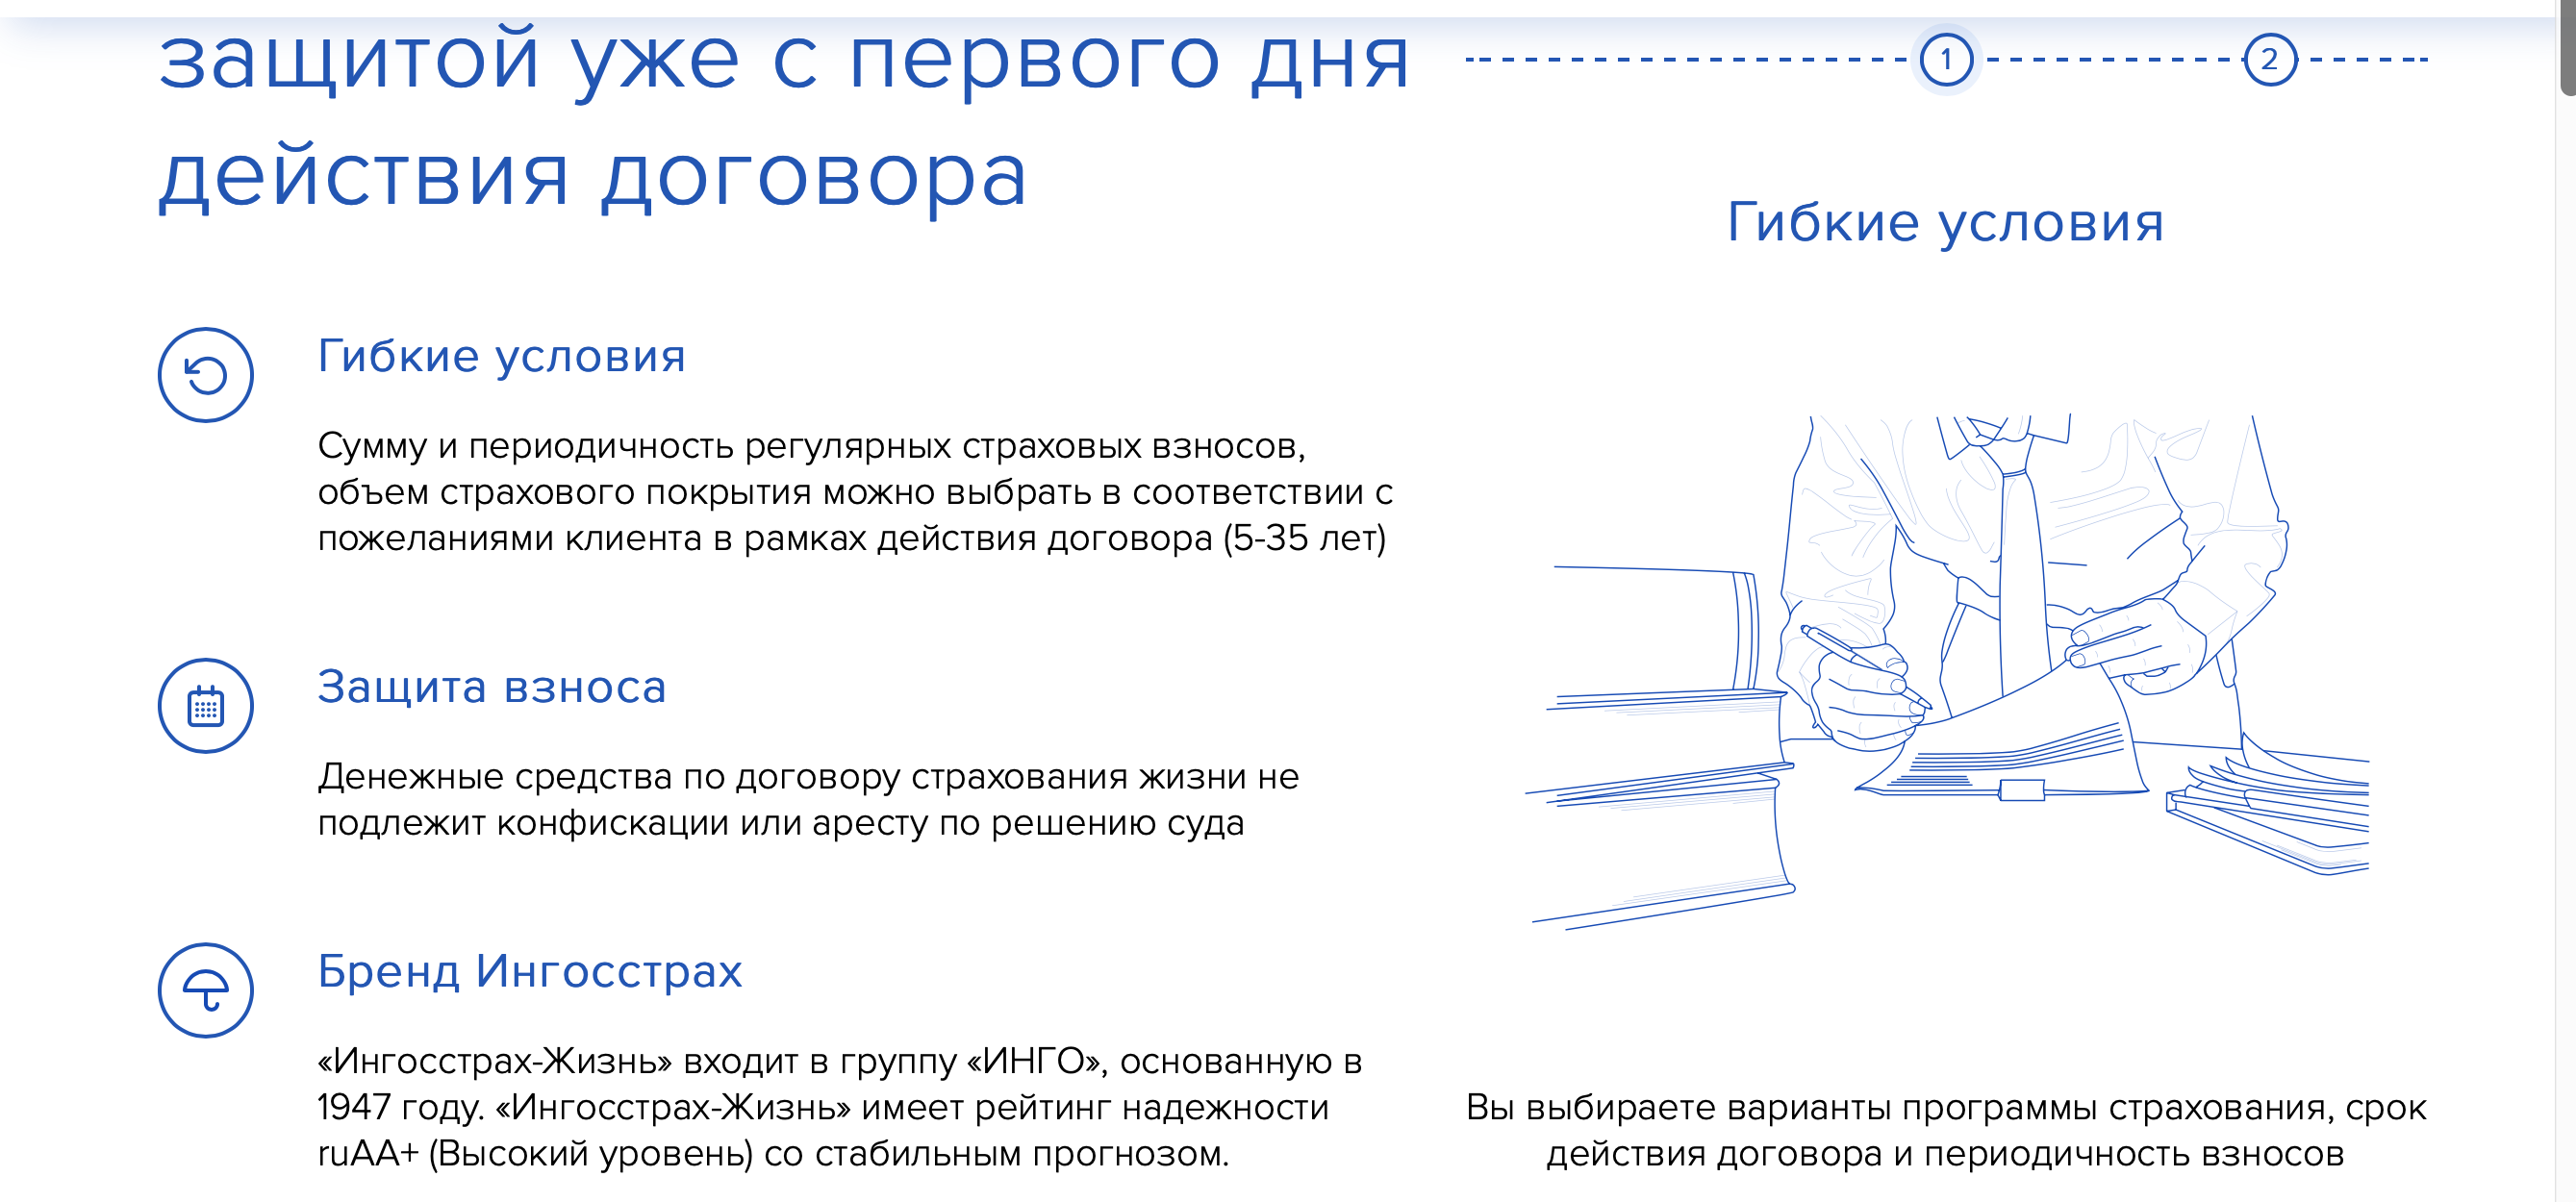 Оформить накопительное страхование жизни онлайн от 200 рублей в день